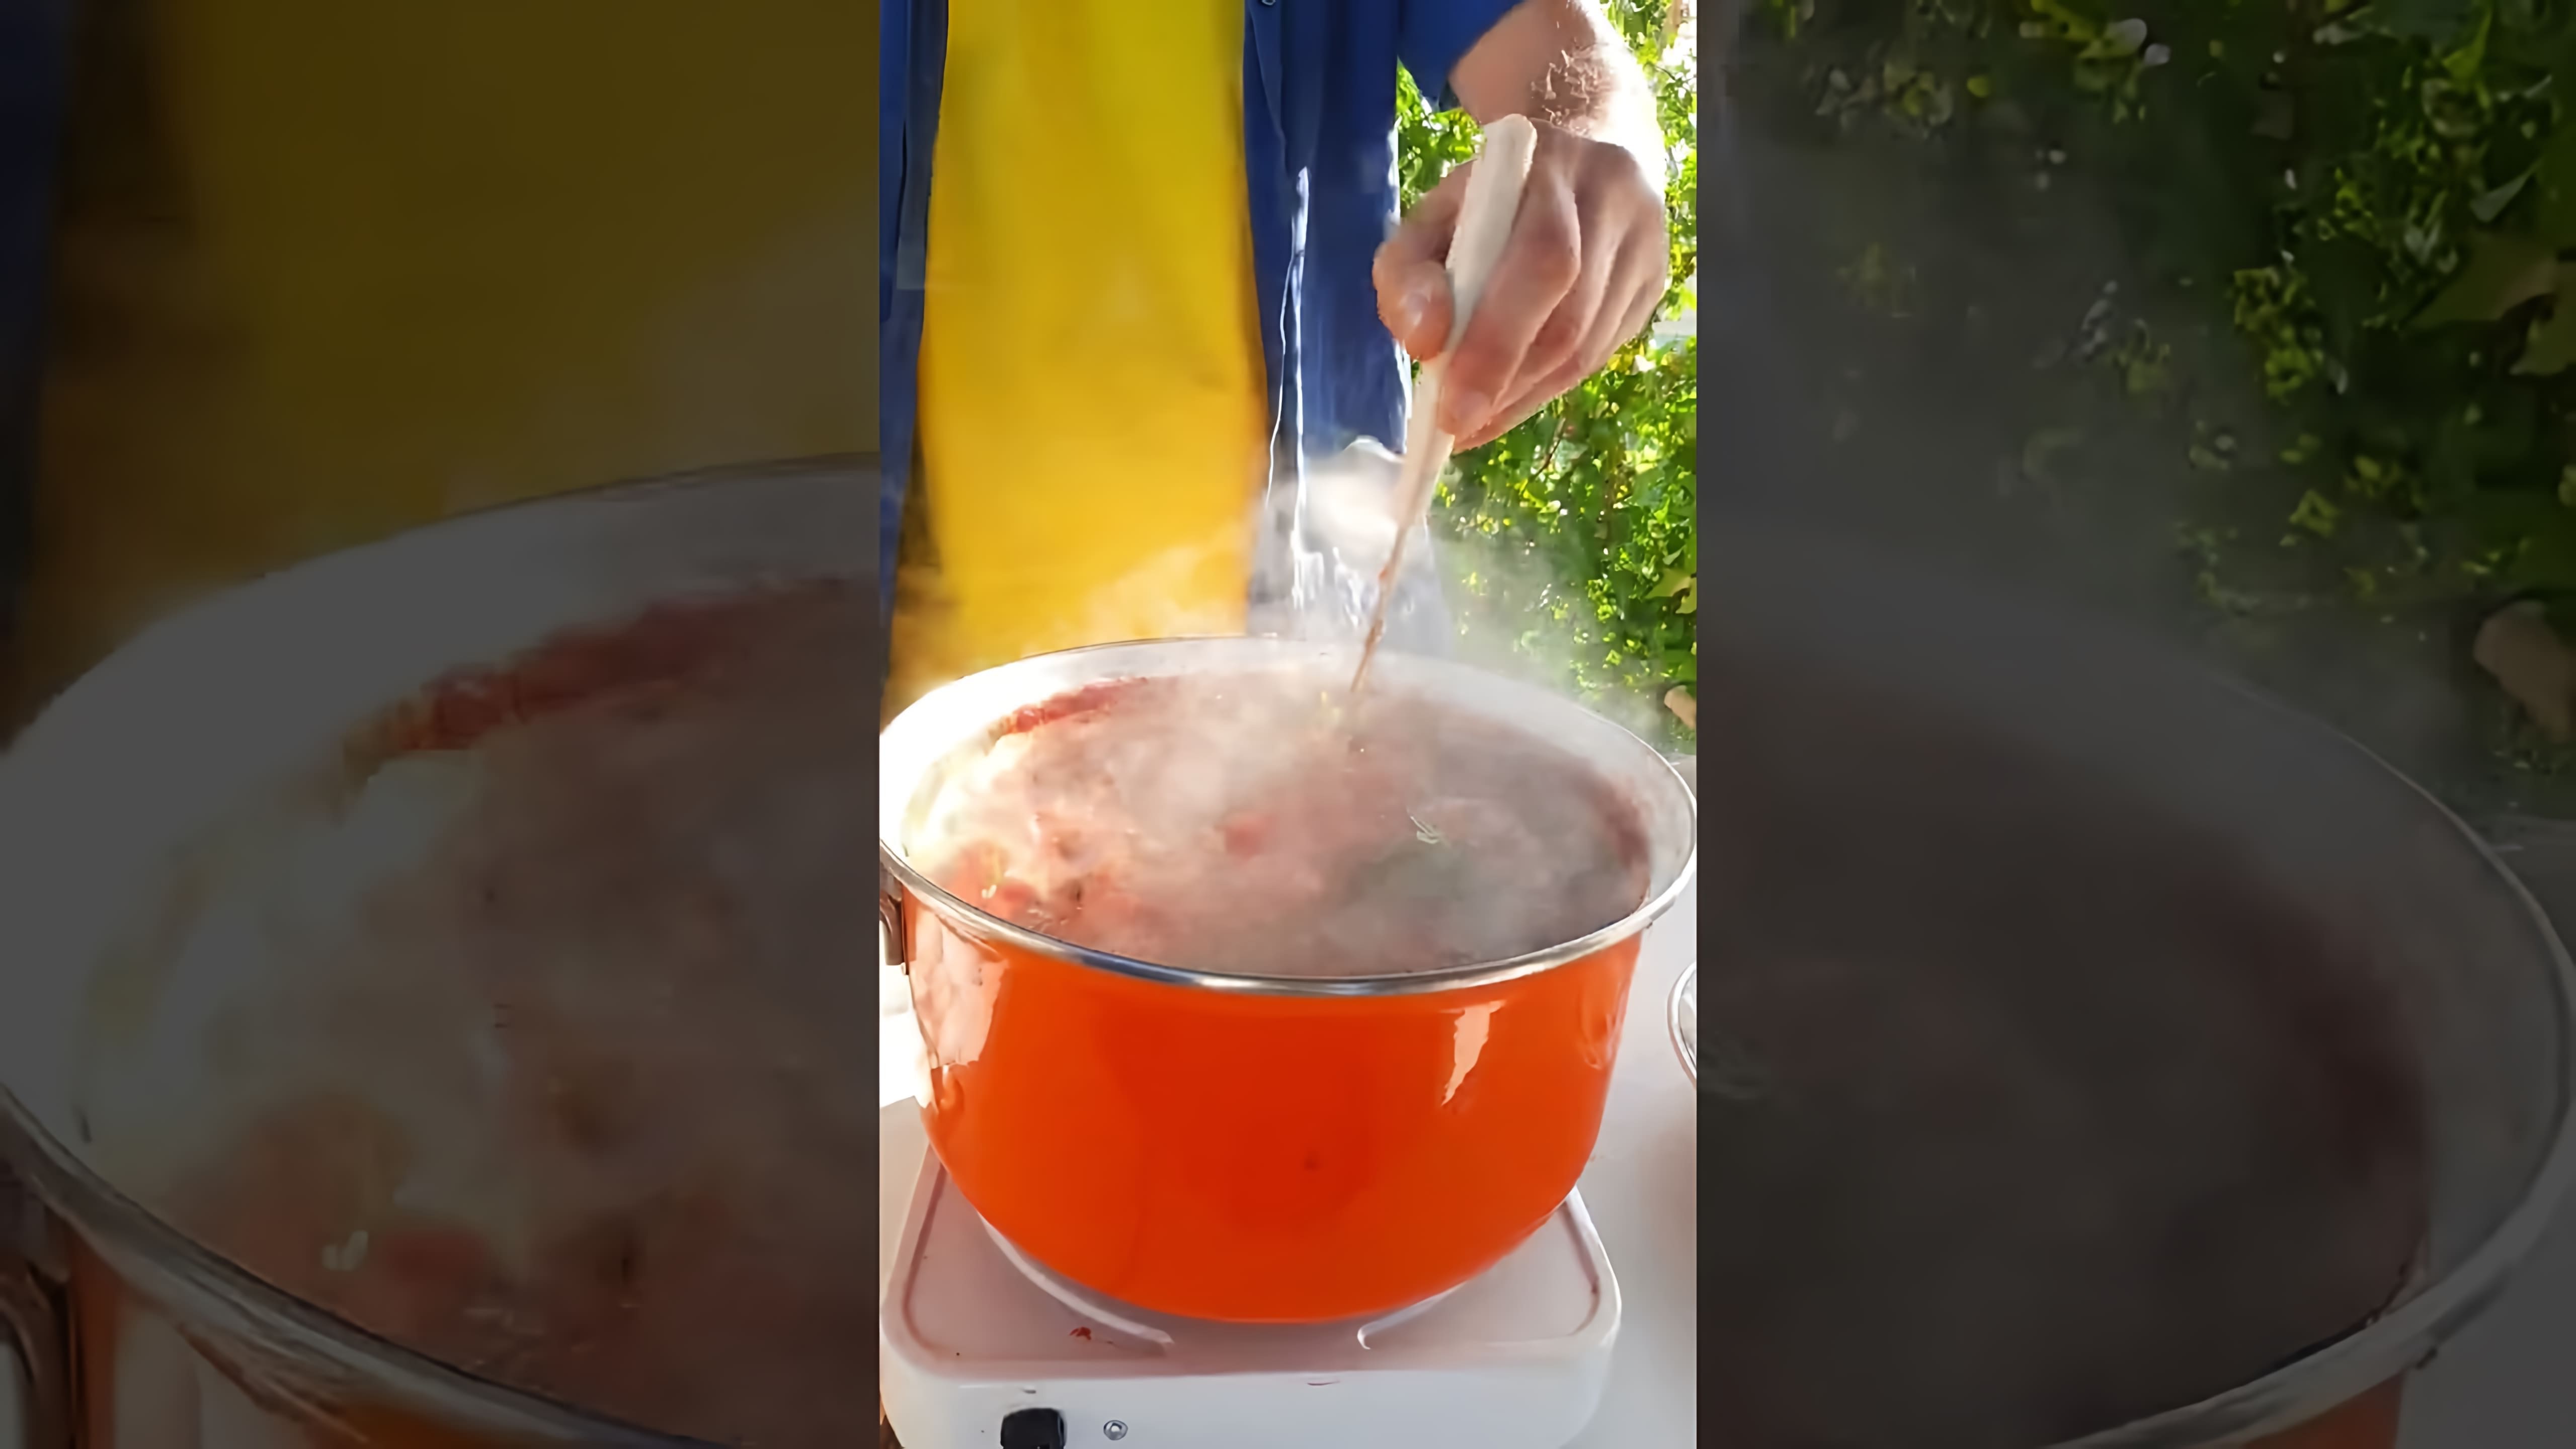 В этом видео демонстрируется процесс приготовления соуса "Долмио" для макарон